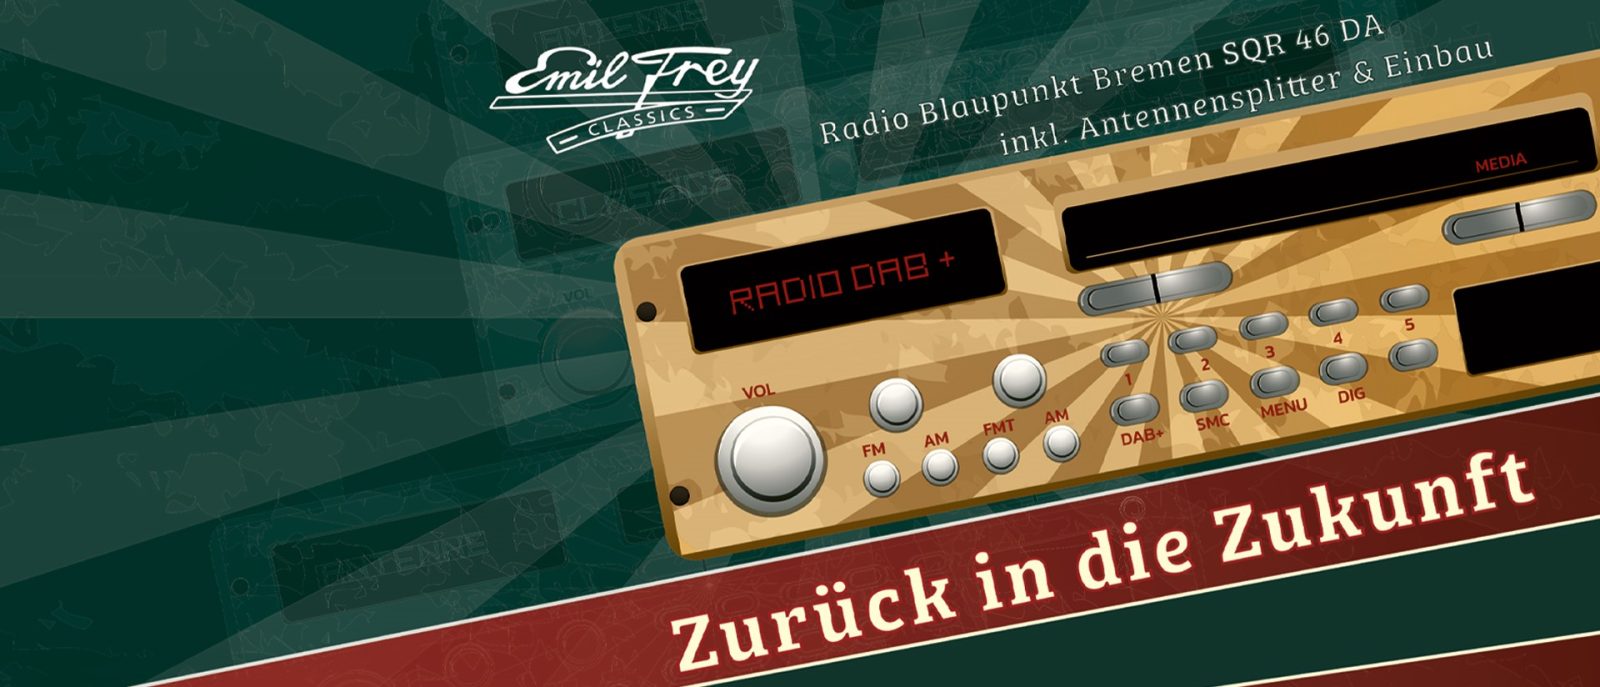 Emil Frey Classics AG: DAB car radio